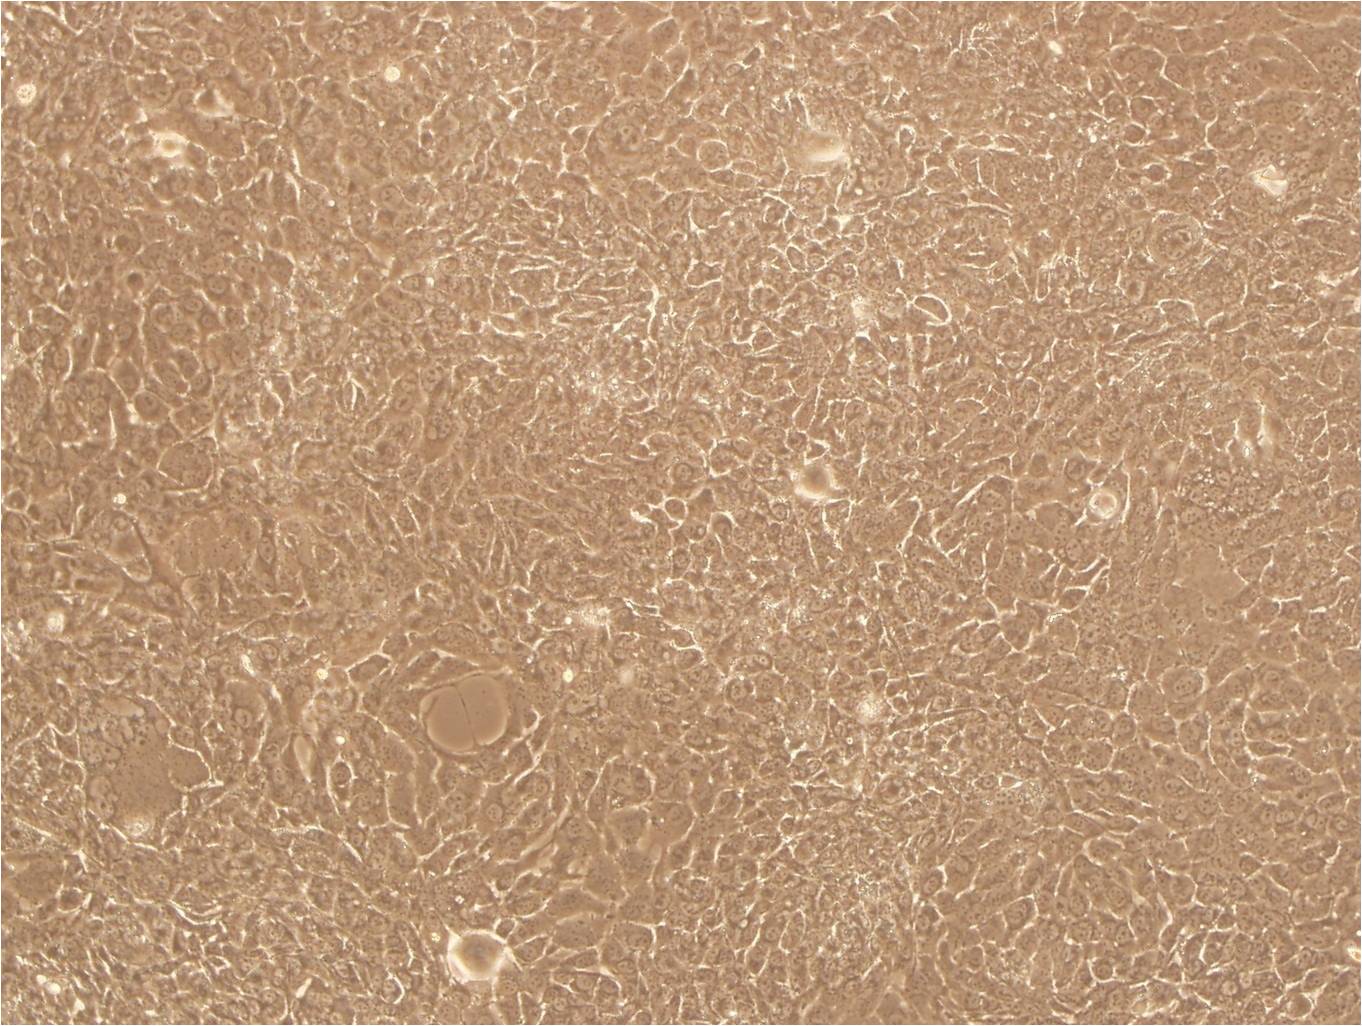 FRhK-4:恒河猴胚肾复苏细胞(提供STR鉴定图谱),FRhK-4